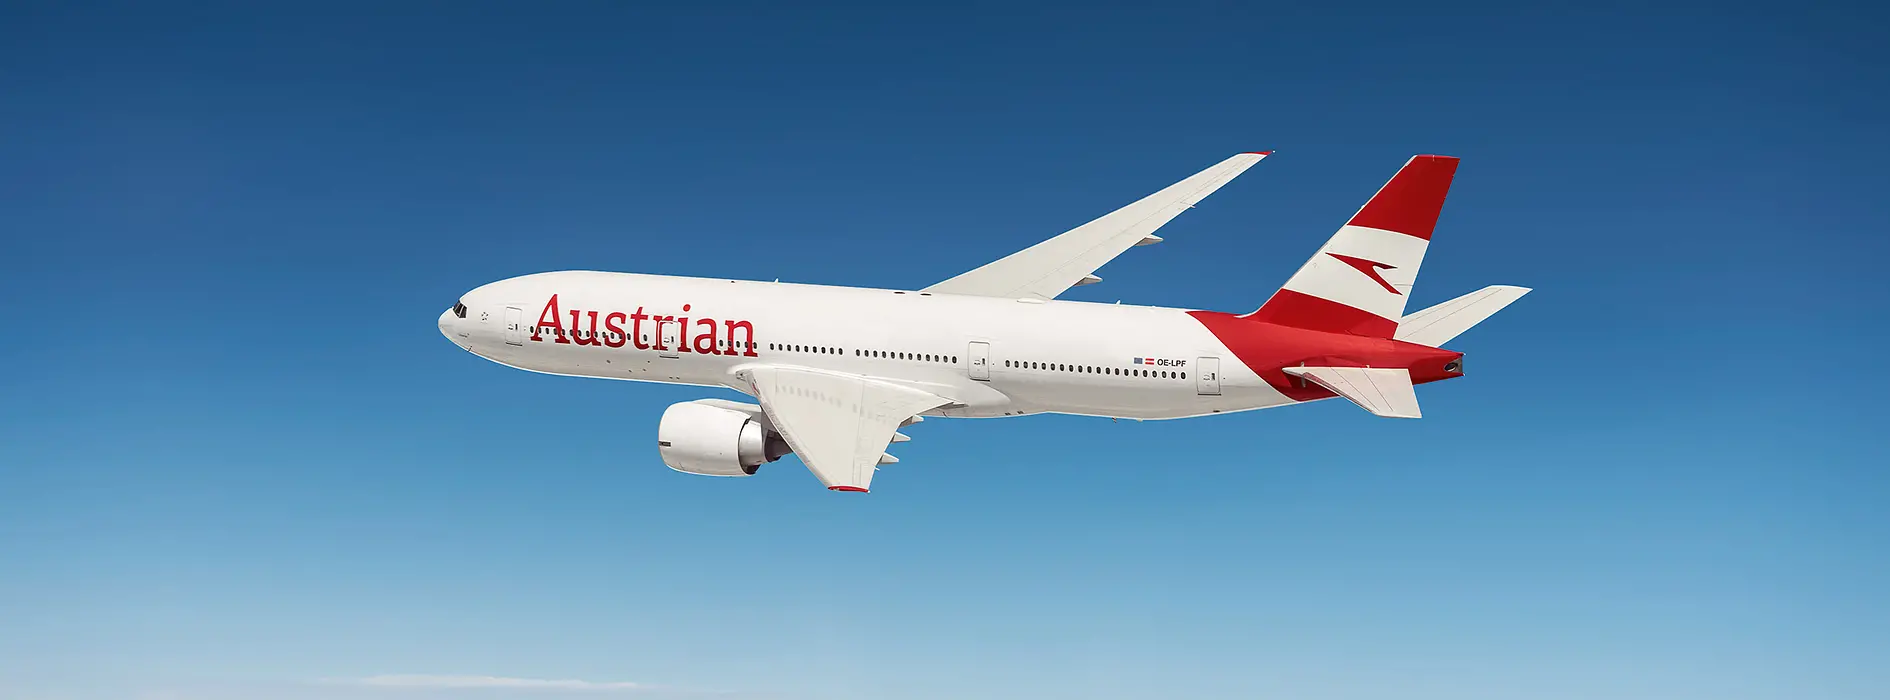 Avion d’Austrian Airlines